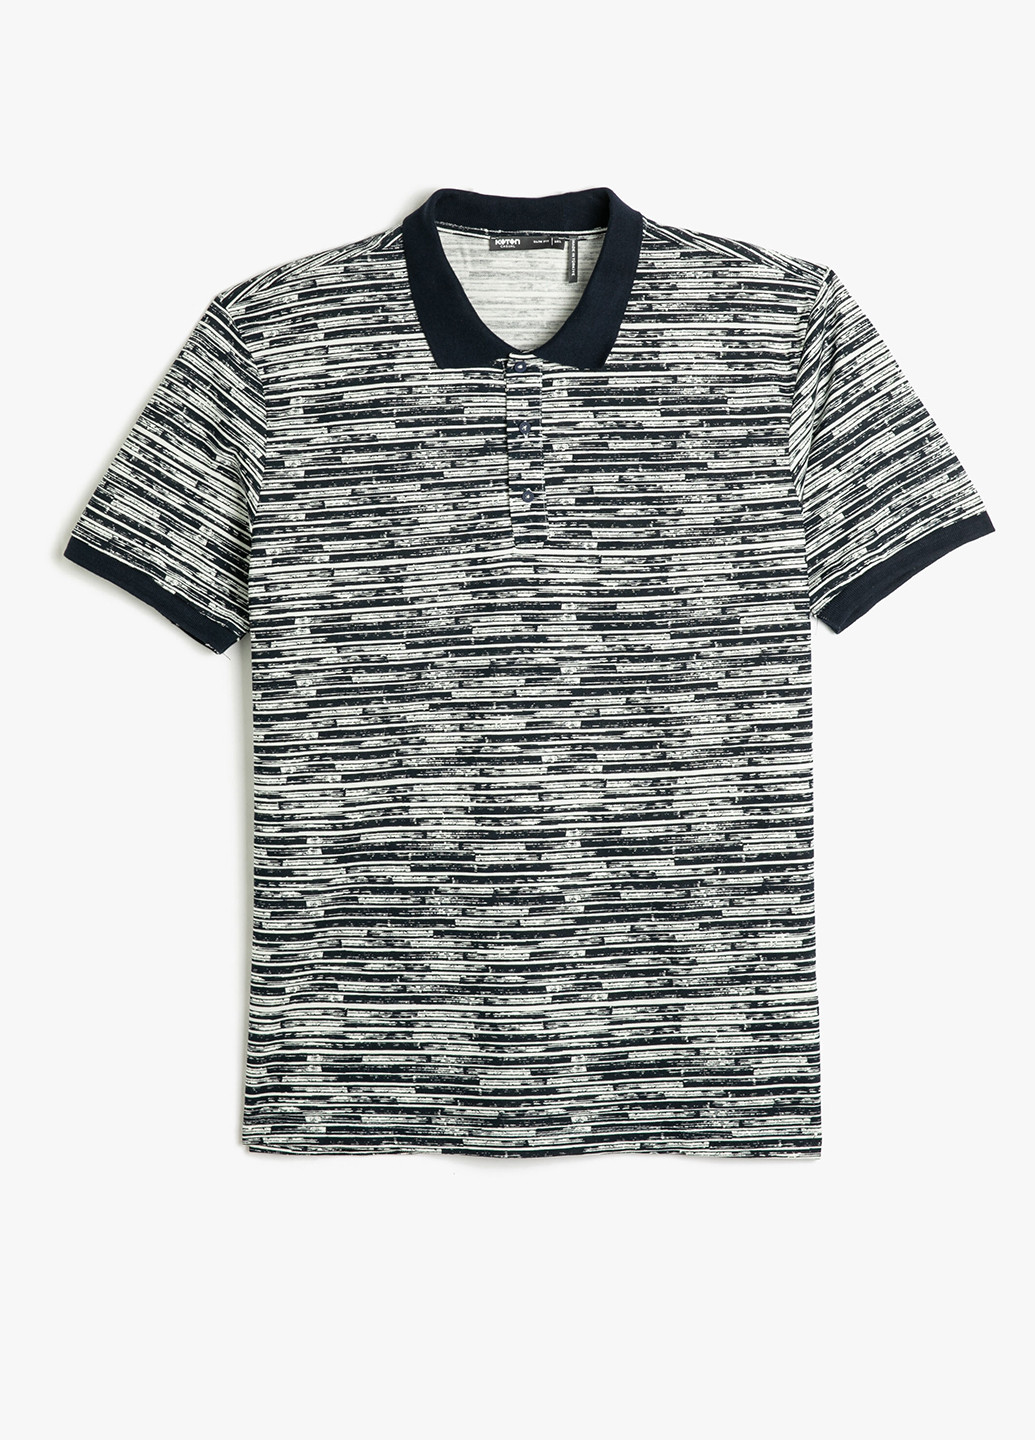 Цветная футболка-поло для мужчин KOTON с абстрактным узором